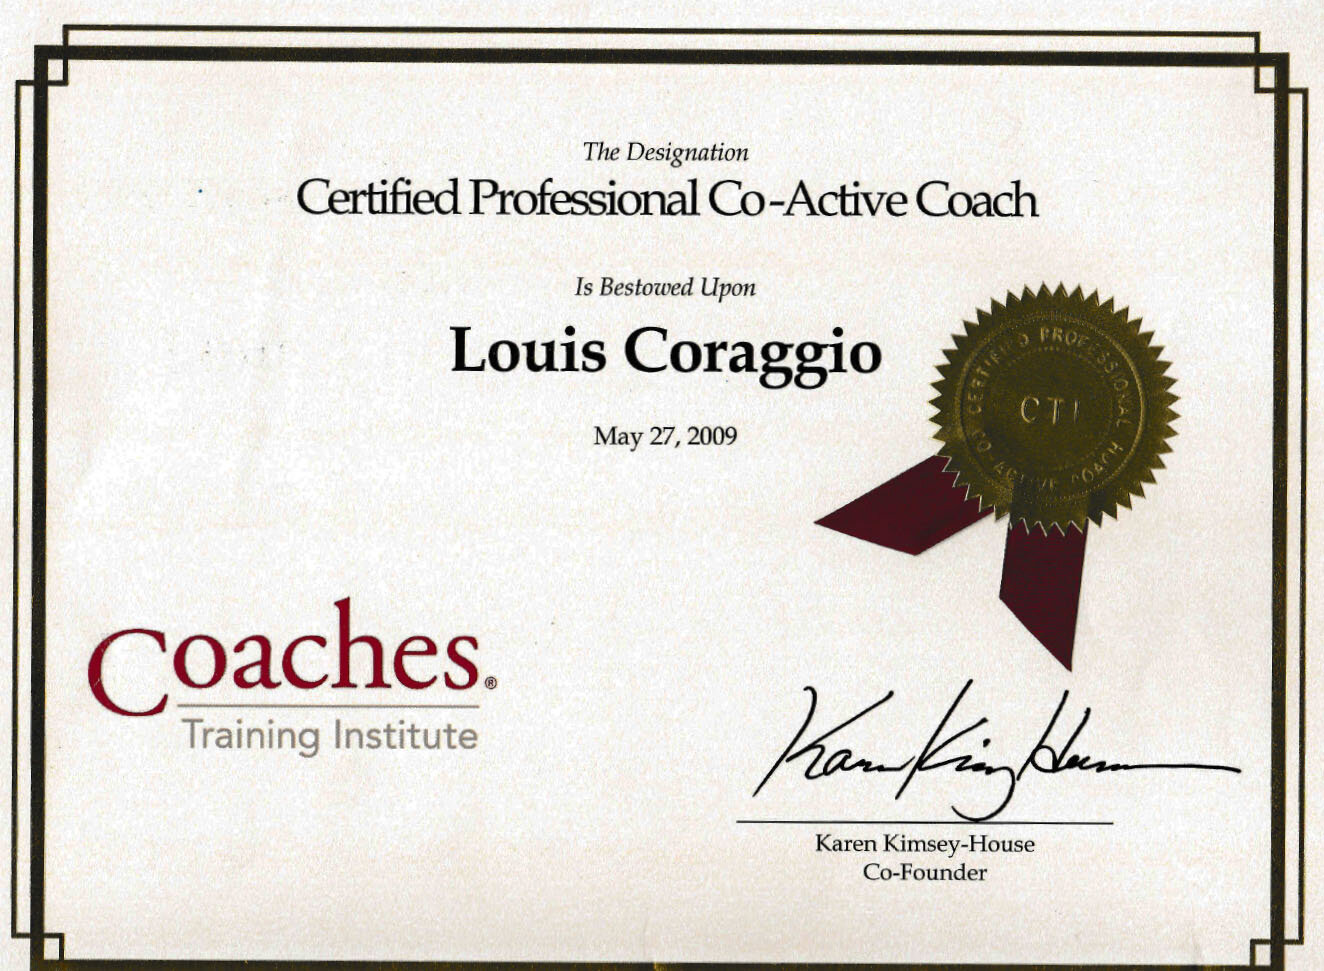 Co-Active Coach 